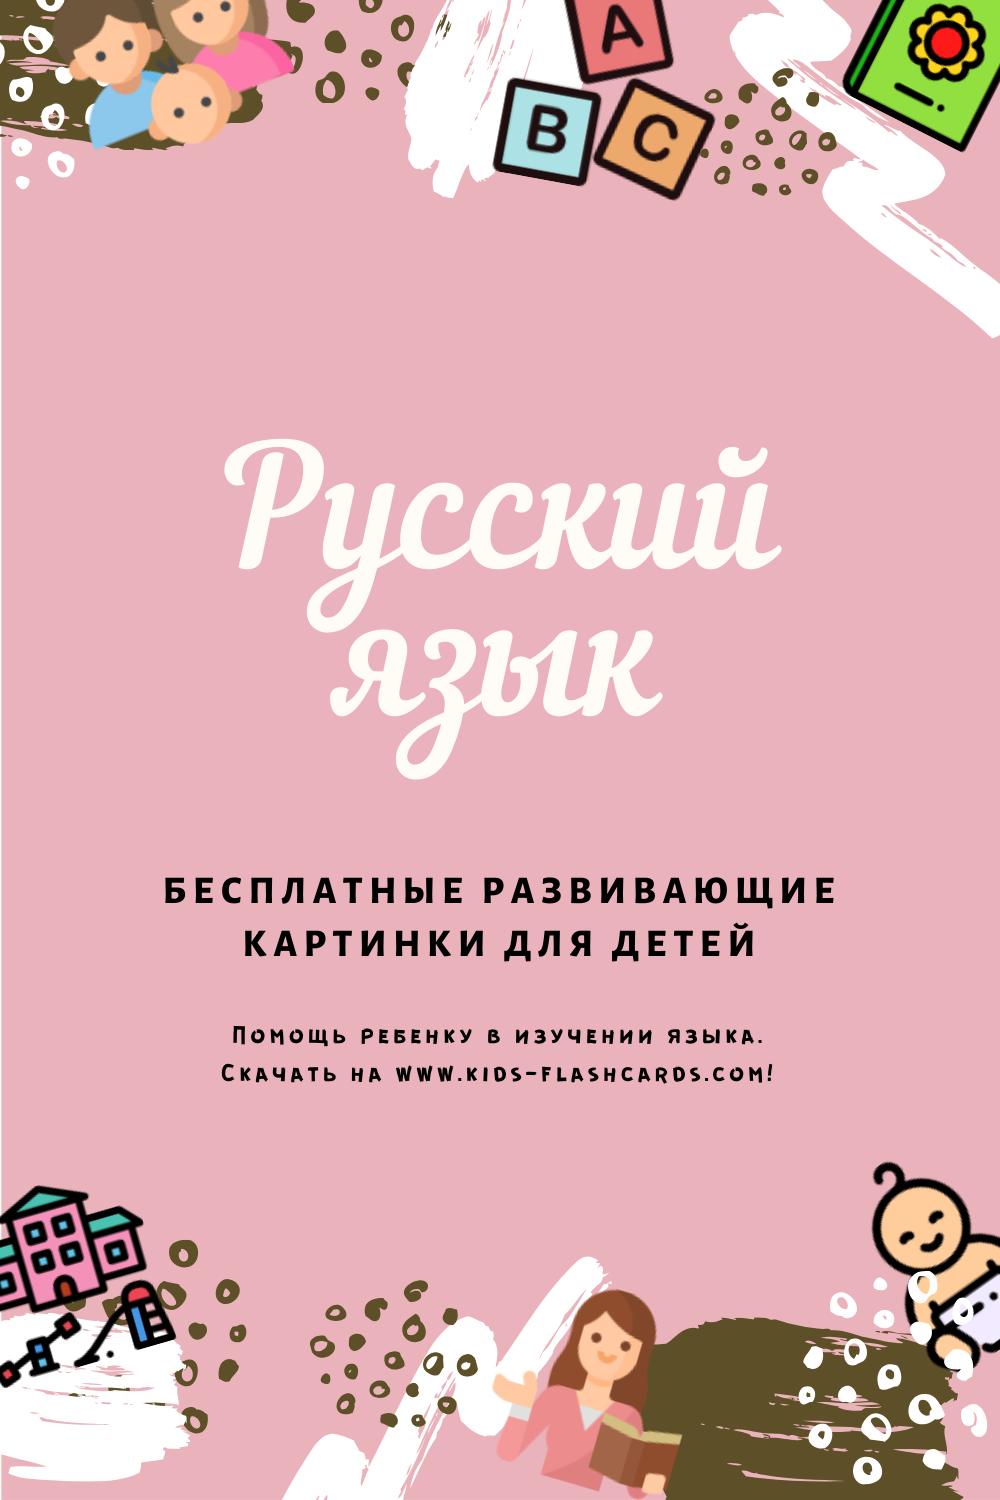 Русский язык - бесплатные материалы для печати